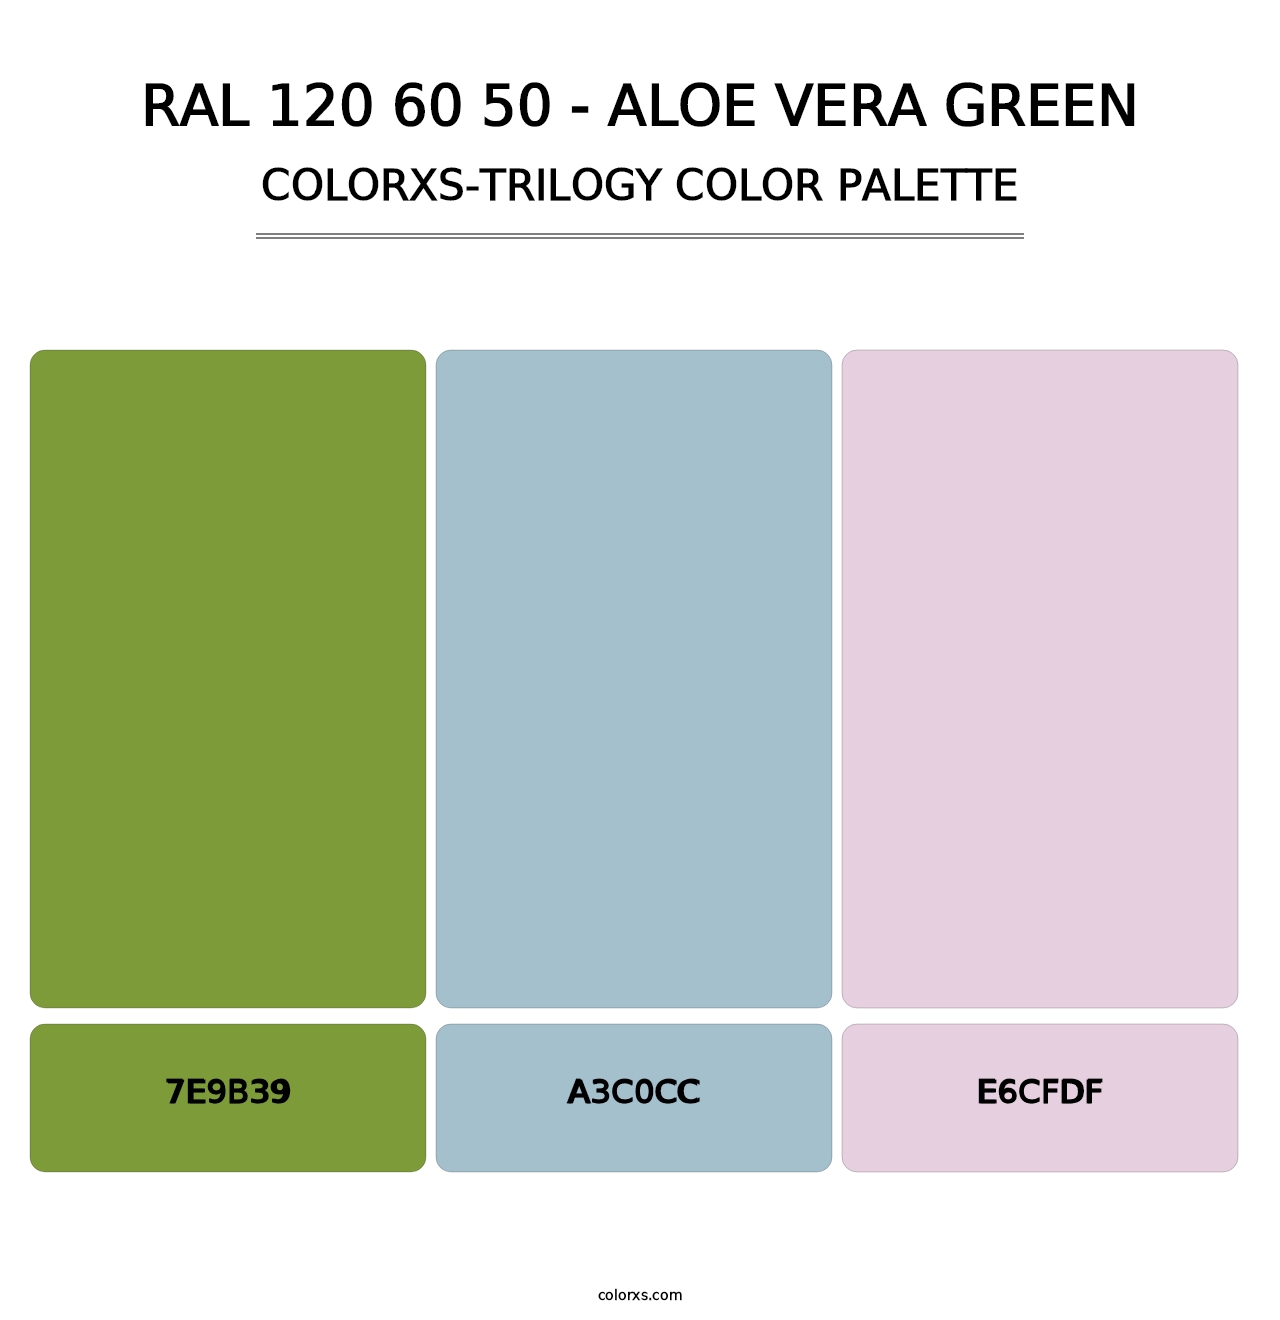 RAL 120 60 50 - Aloe Vera Green - Colorxs Trilogy Palette